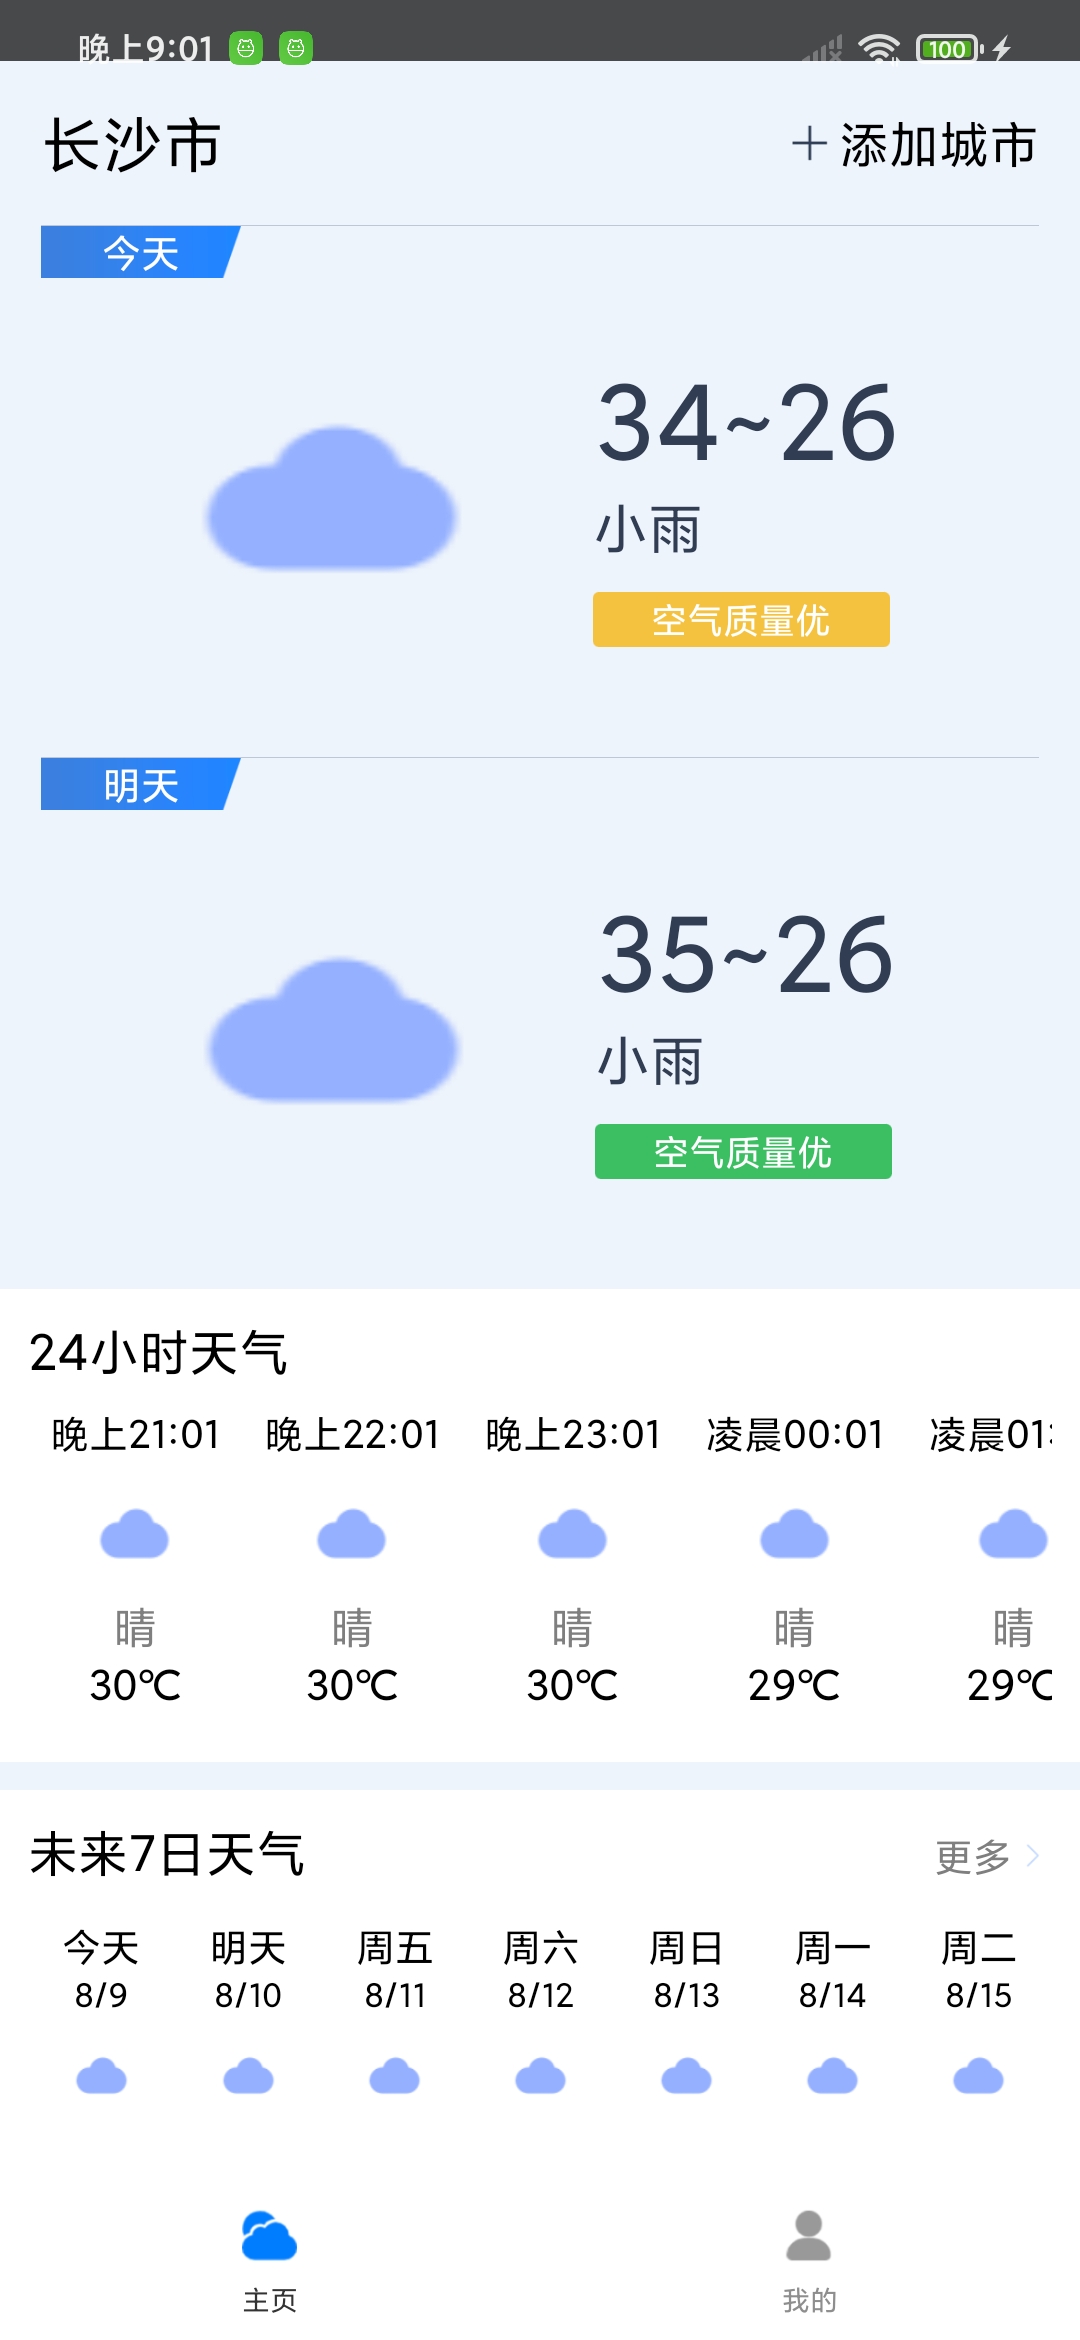 曹操天气青岛app开发的网站